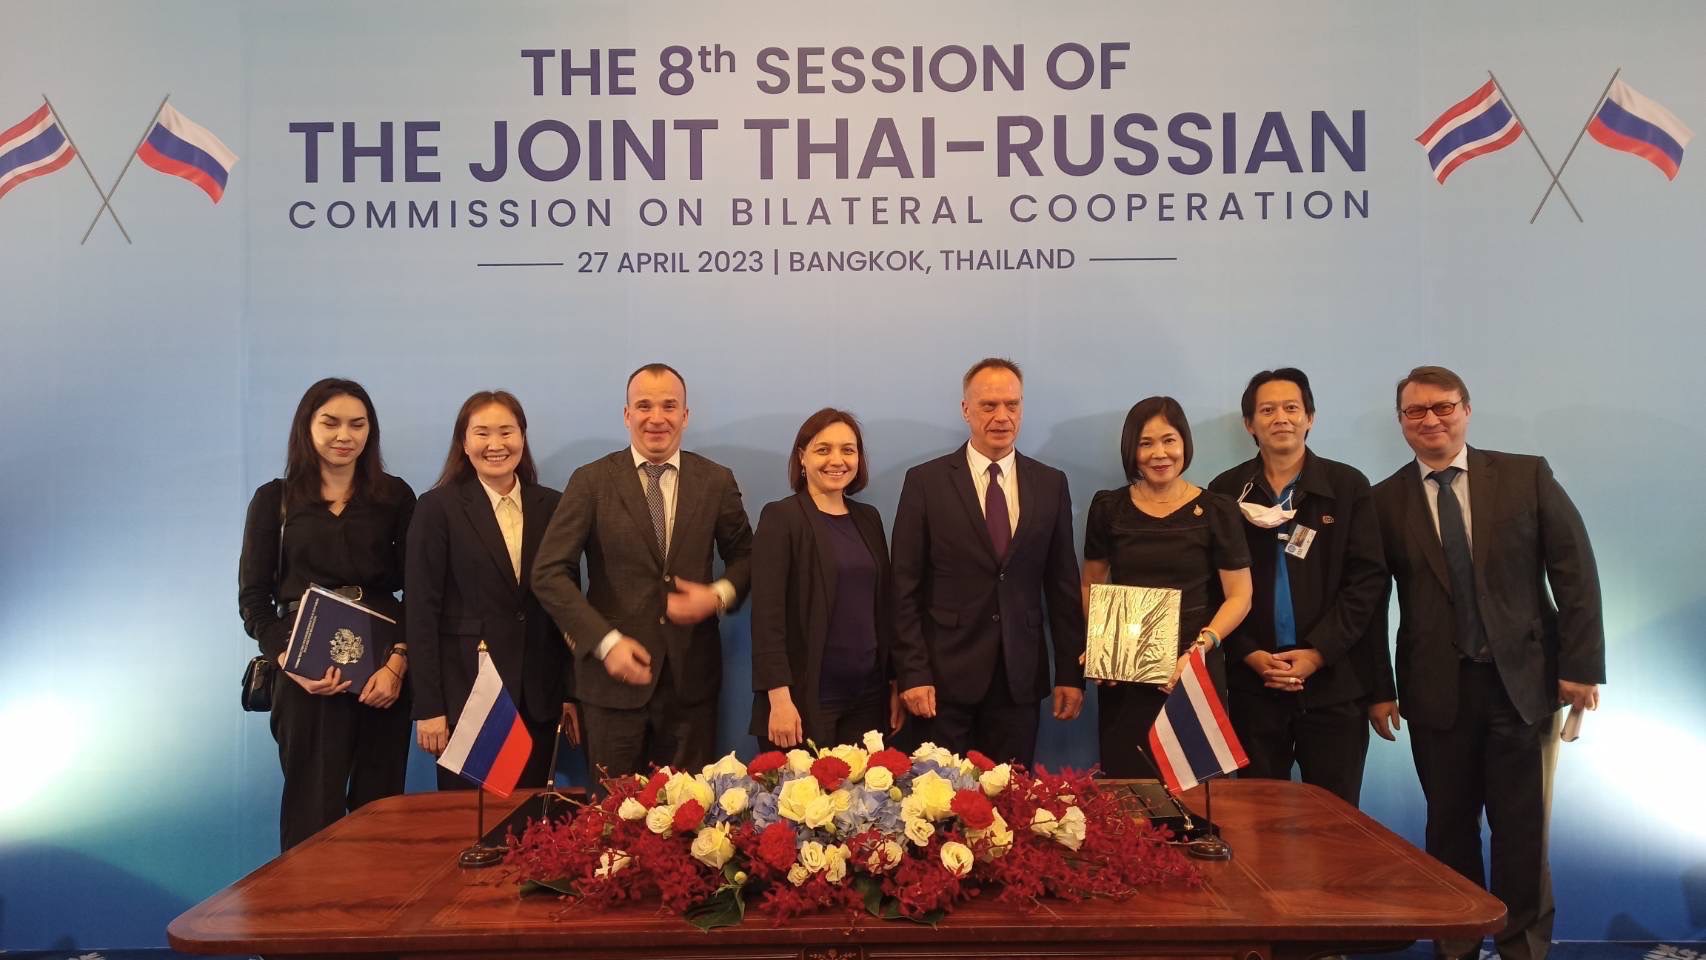 การประชุมคณะกรรมาธิการร่วมว่าด้วยความร่วมมือทวิภาคีไทย-รัสเซีย ครั้งที่ 8 (Plenary Session)